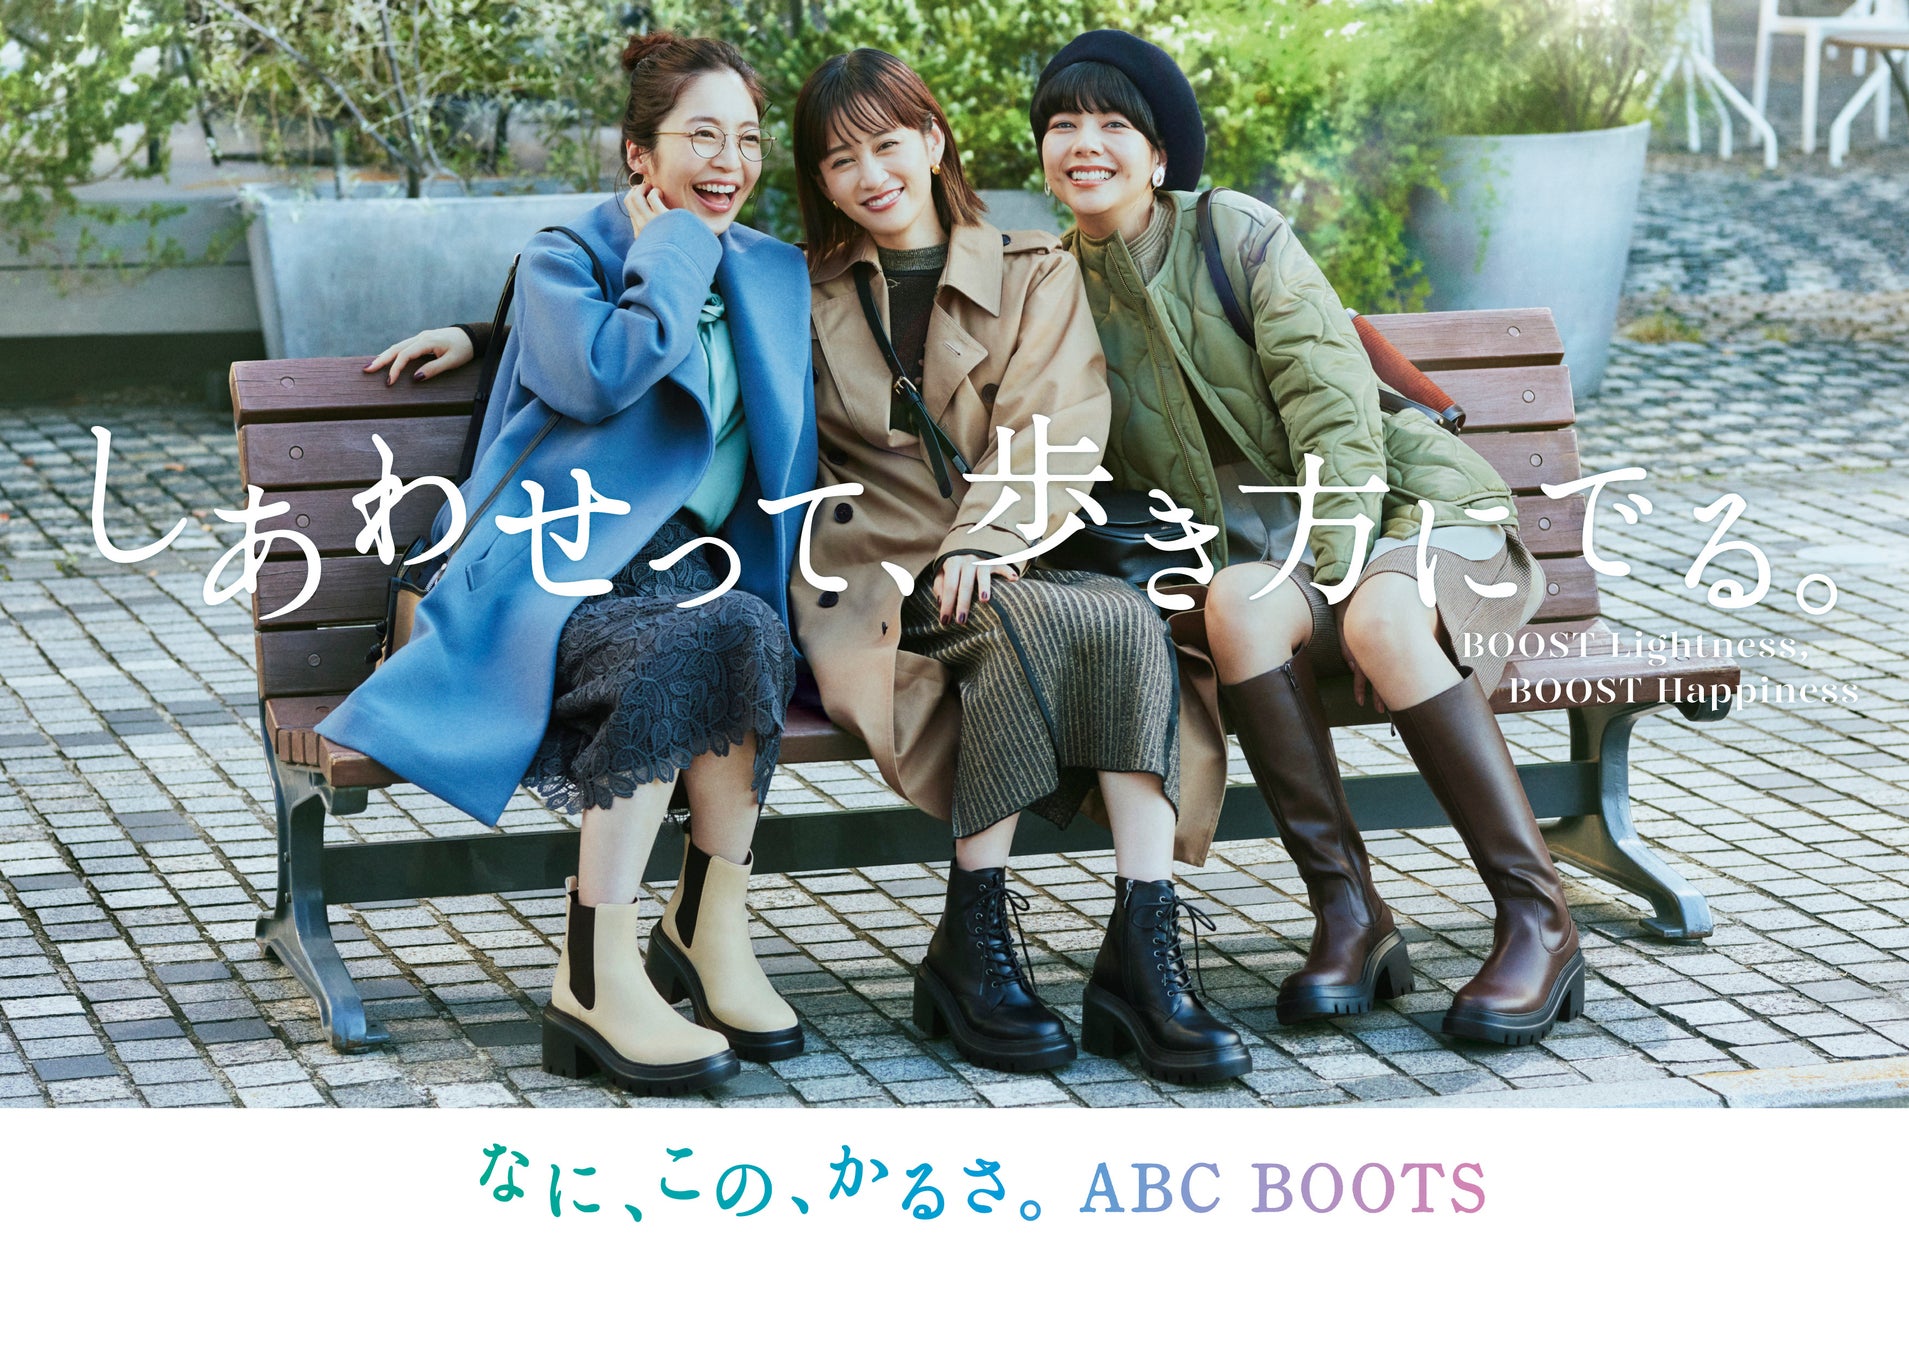 2022FW [ABC BOOTS COLLECTION]がスタート　女優・前田敦子さん出演、新CM「待ち合わせ篇」公開　おしゃれして、ABC BOOTS を履いて軽やかに街中を歩くのサブ画像1